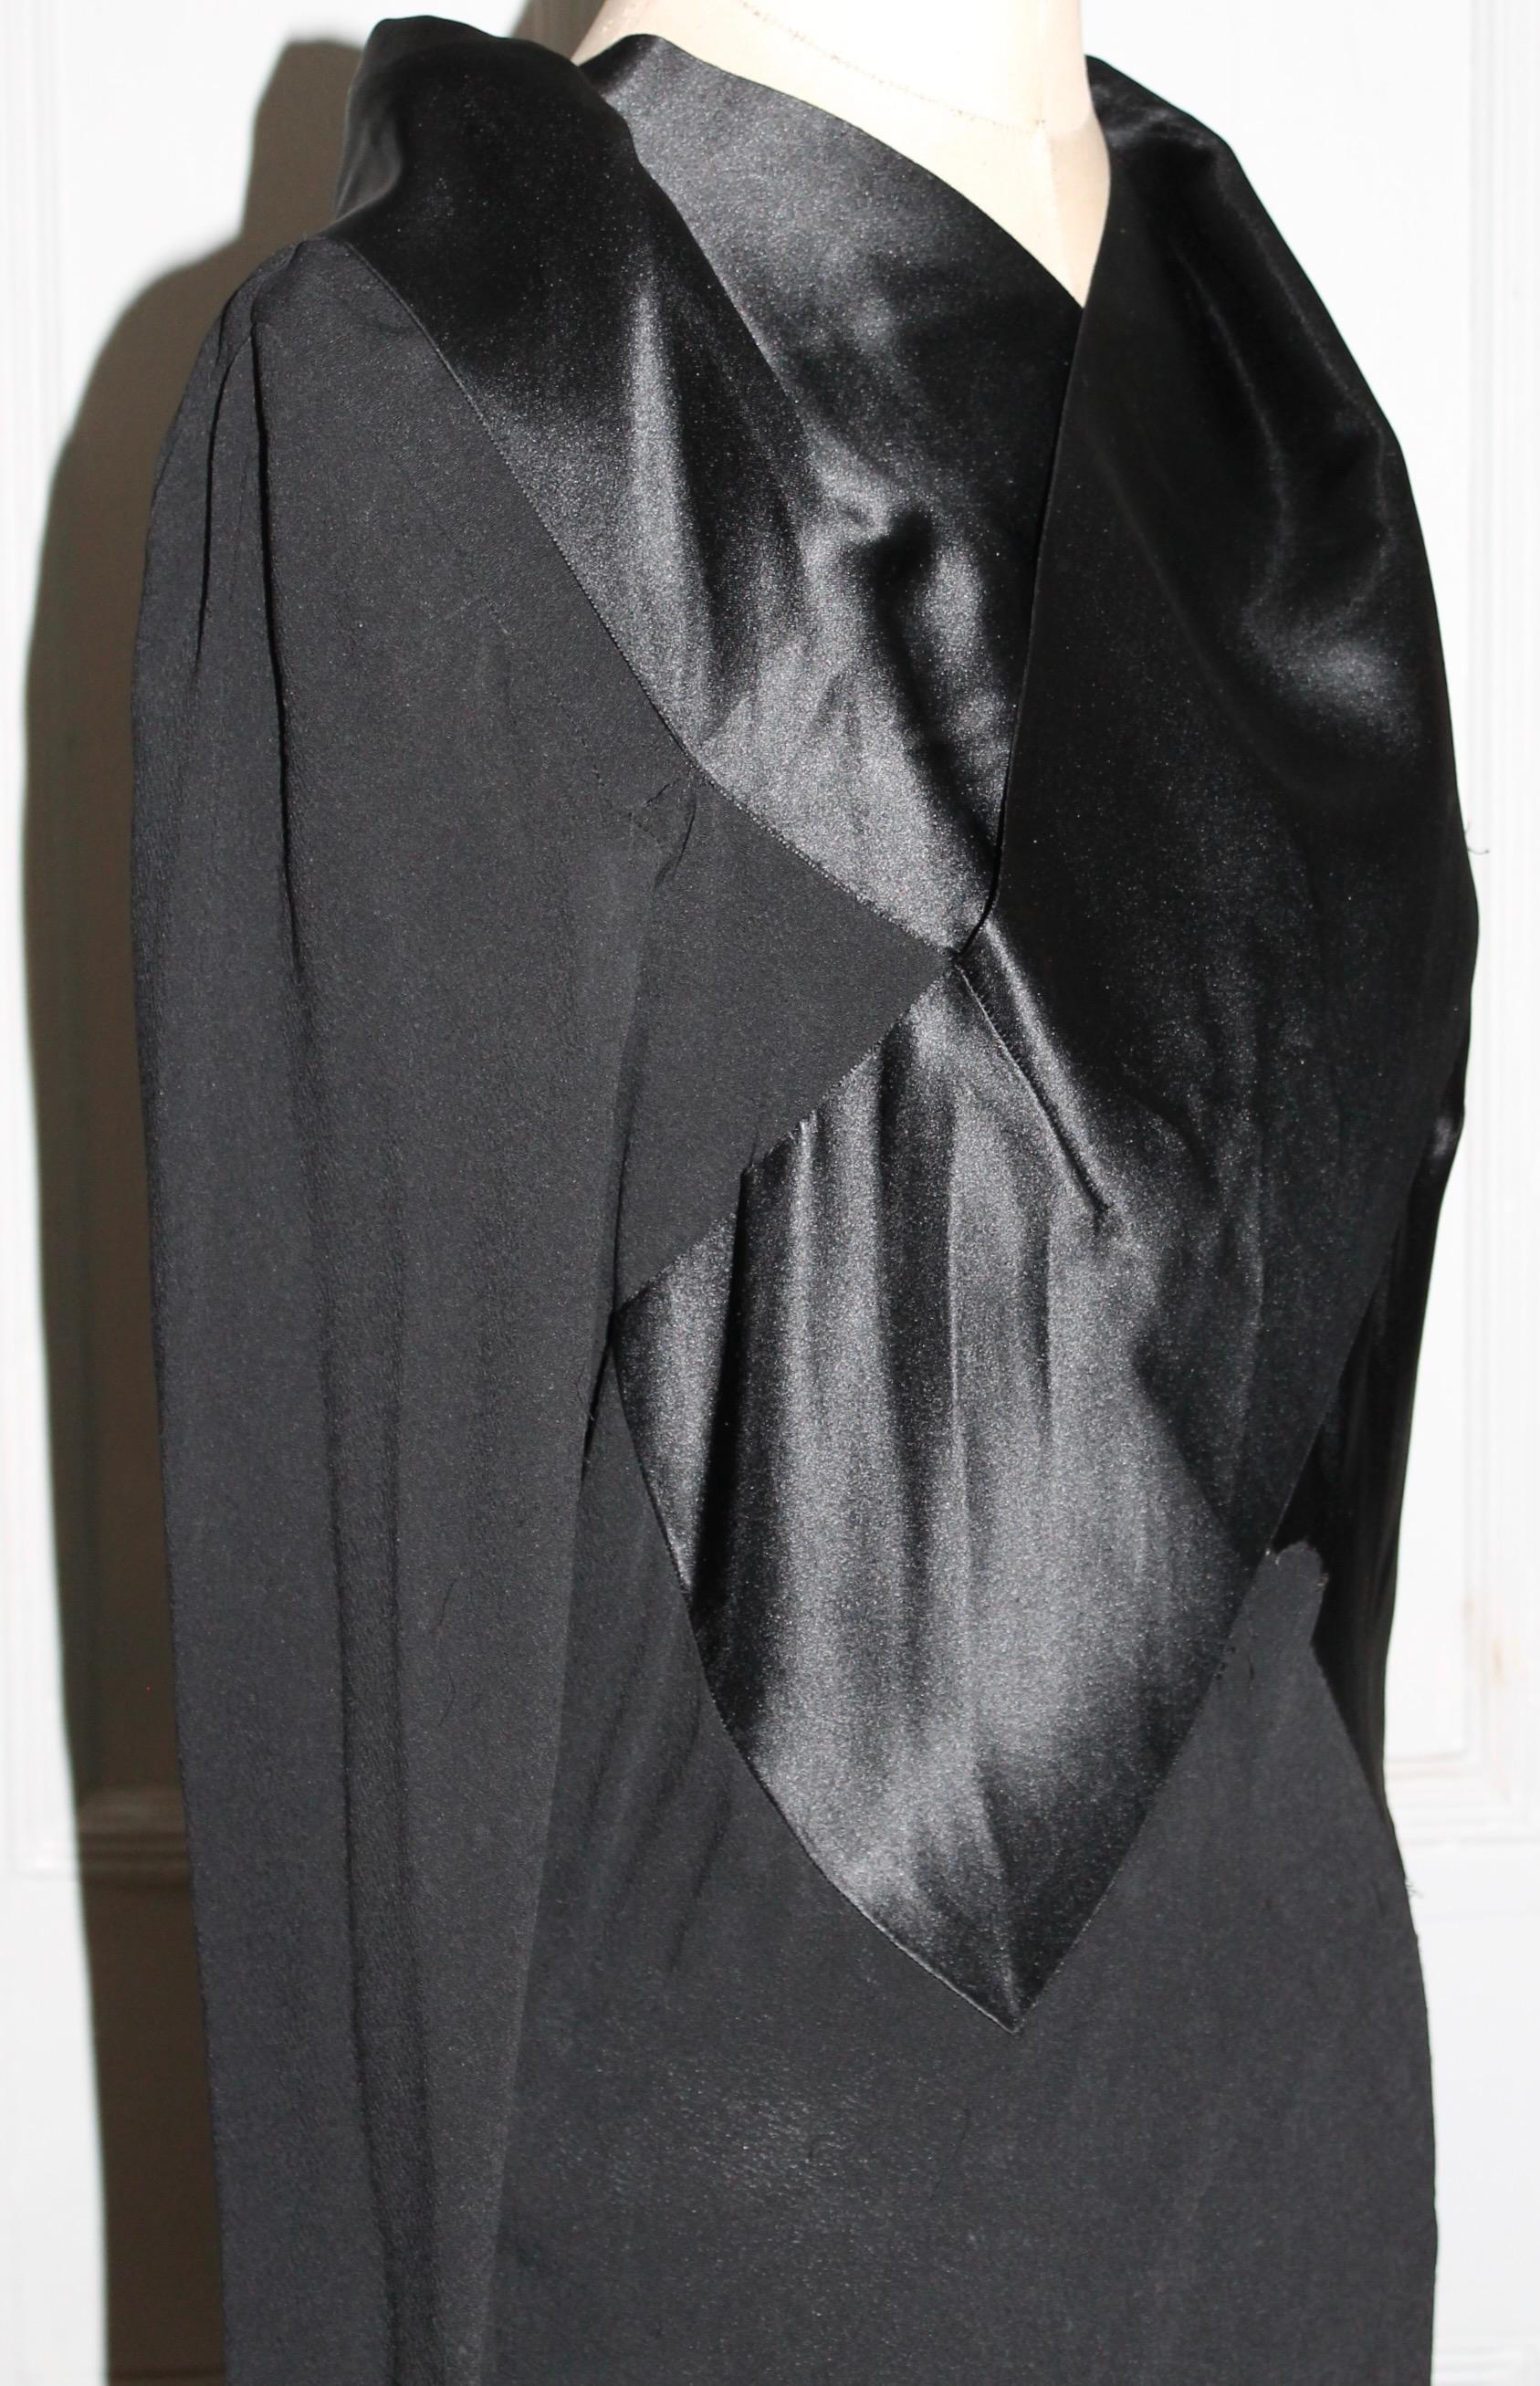 France Vramant Black Crepe Silk Evening Gown, 1930's Paris  For Sale 2